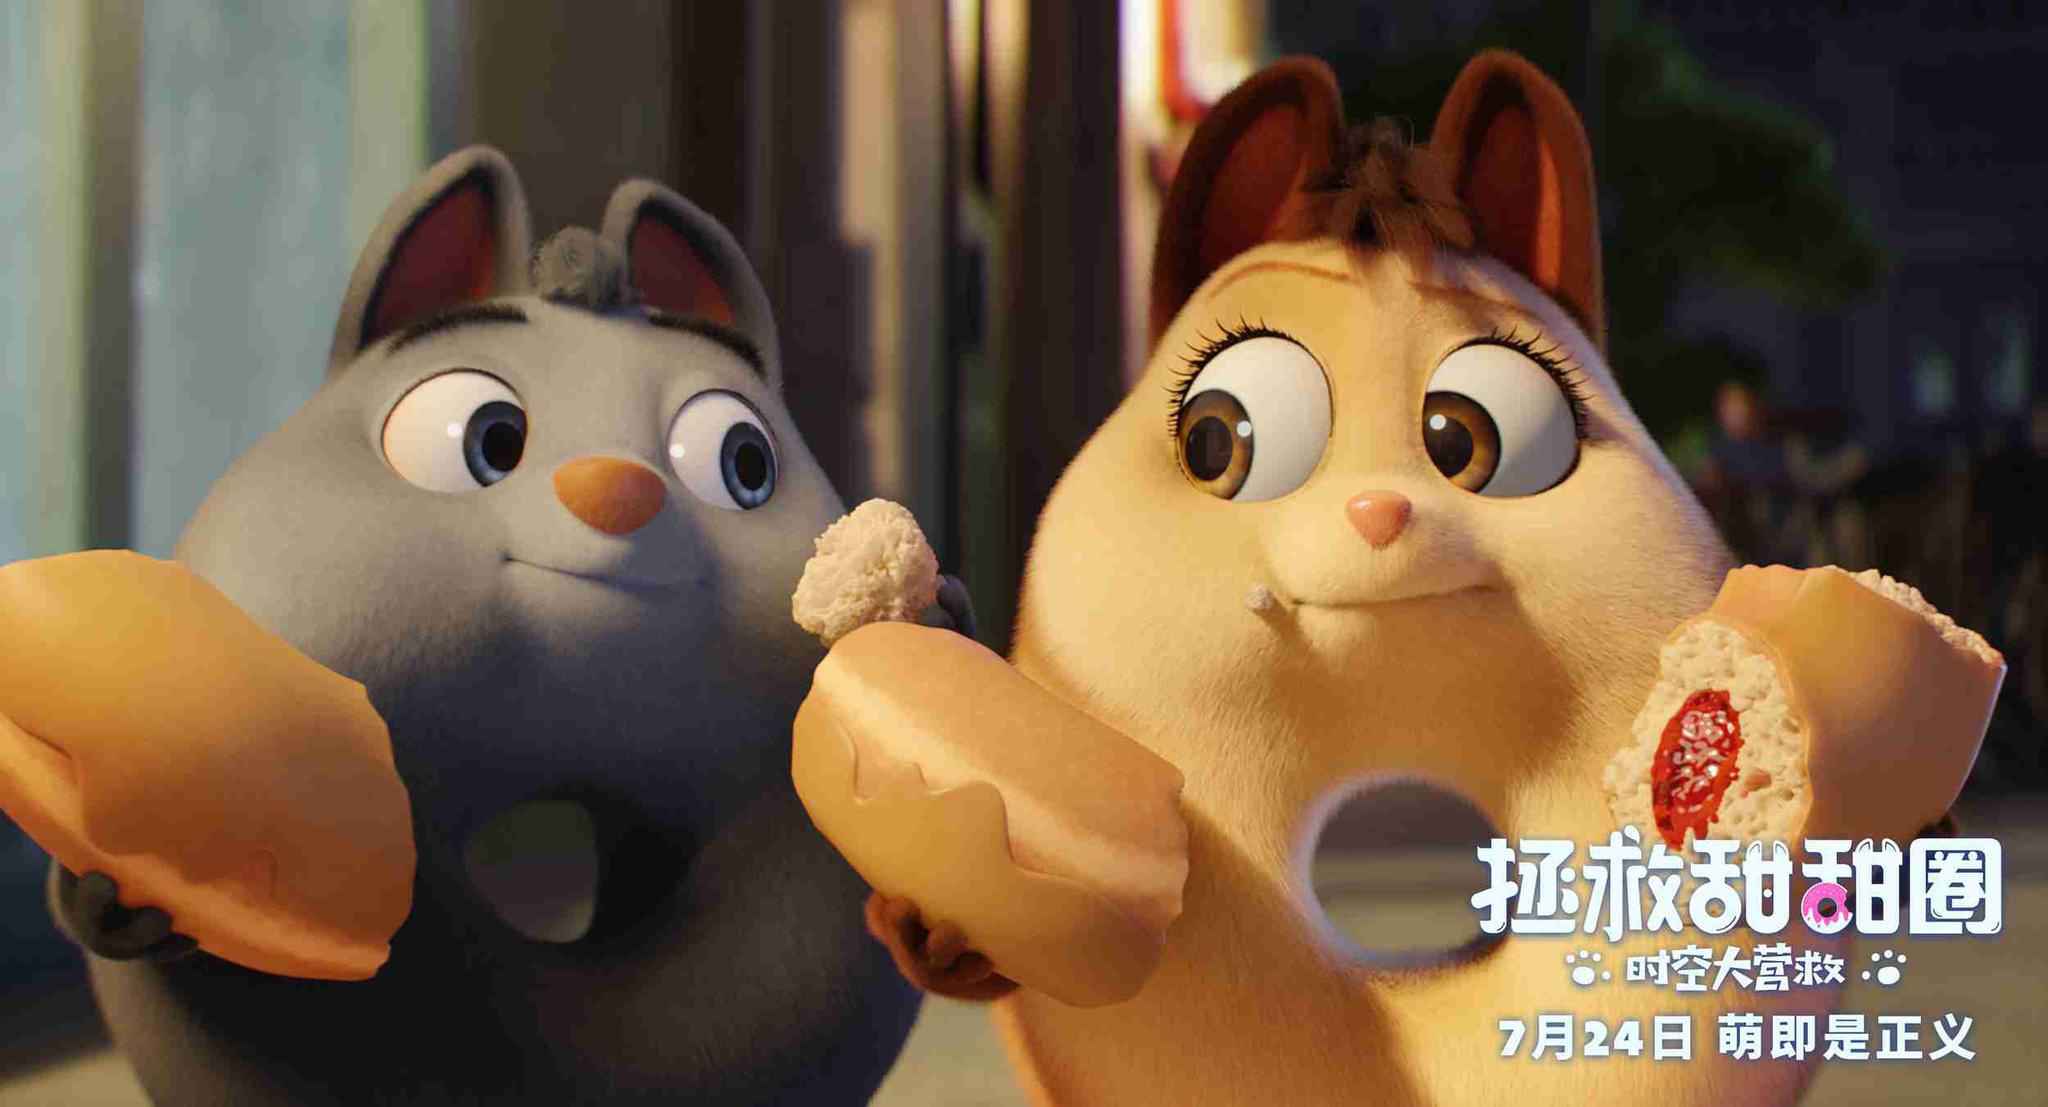 动画电影《拯救甜甜圈》定档7月24日上映